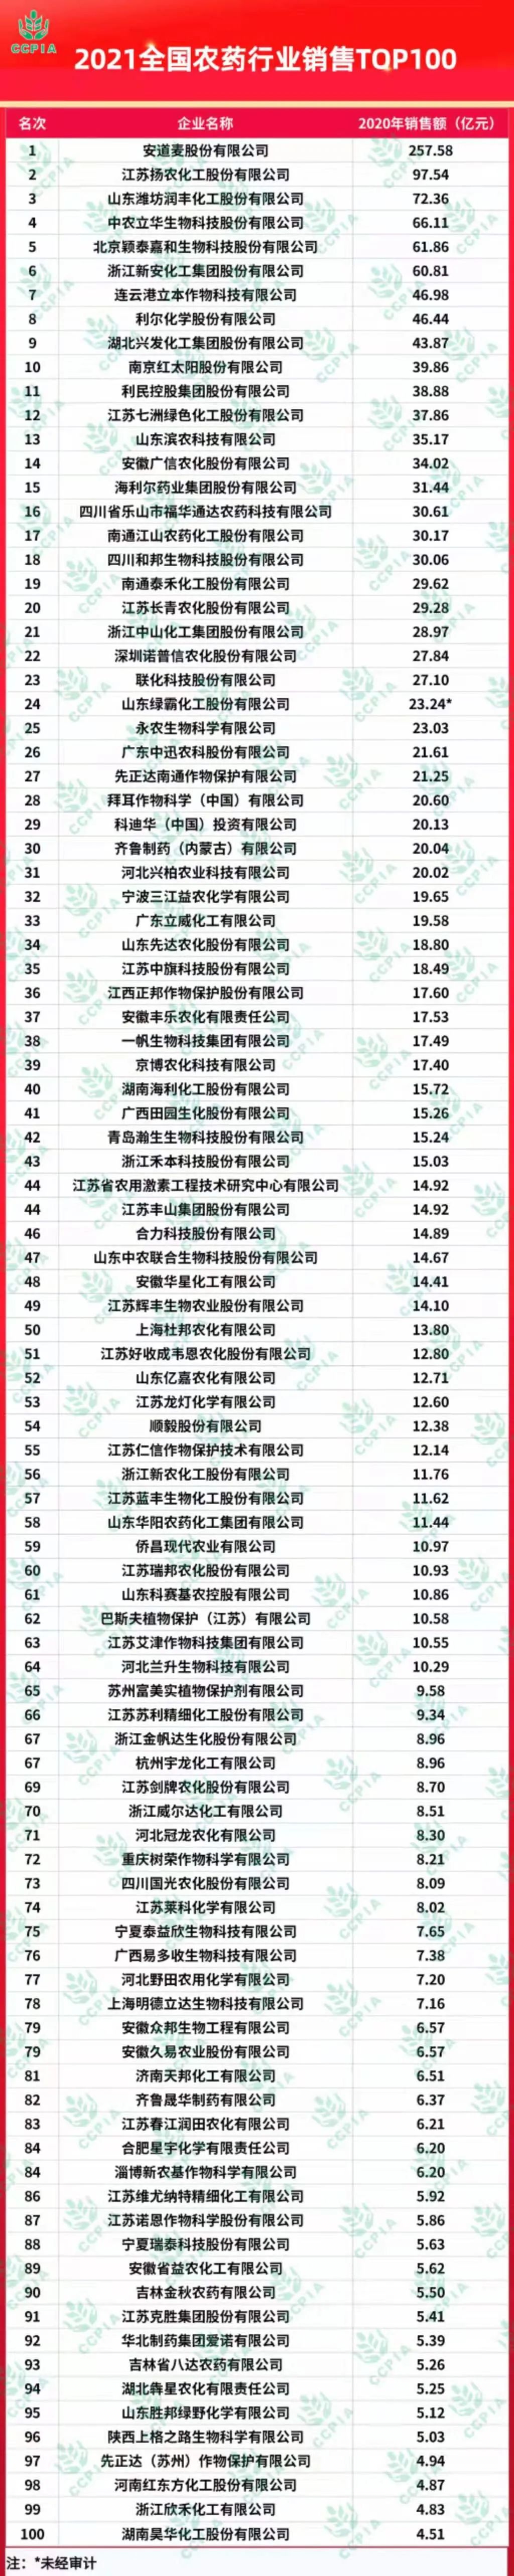 2021中国农药销售排行_2021全国农药行业销售TOP100榜单揭晓!